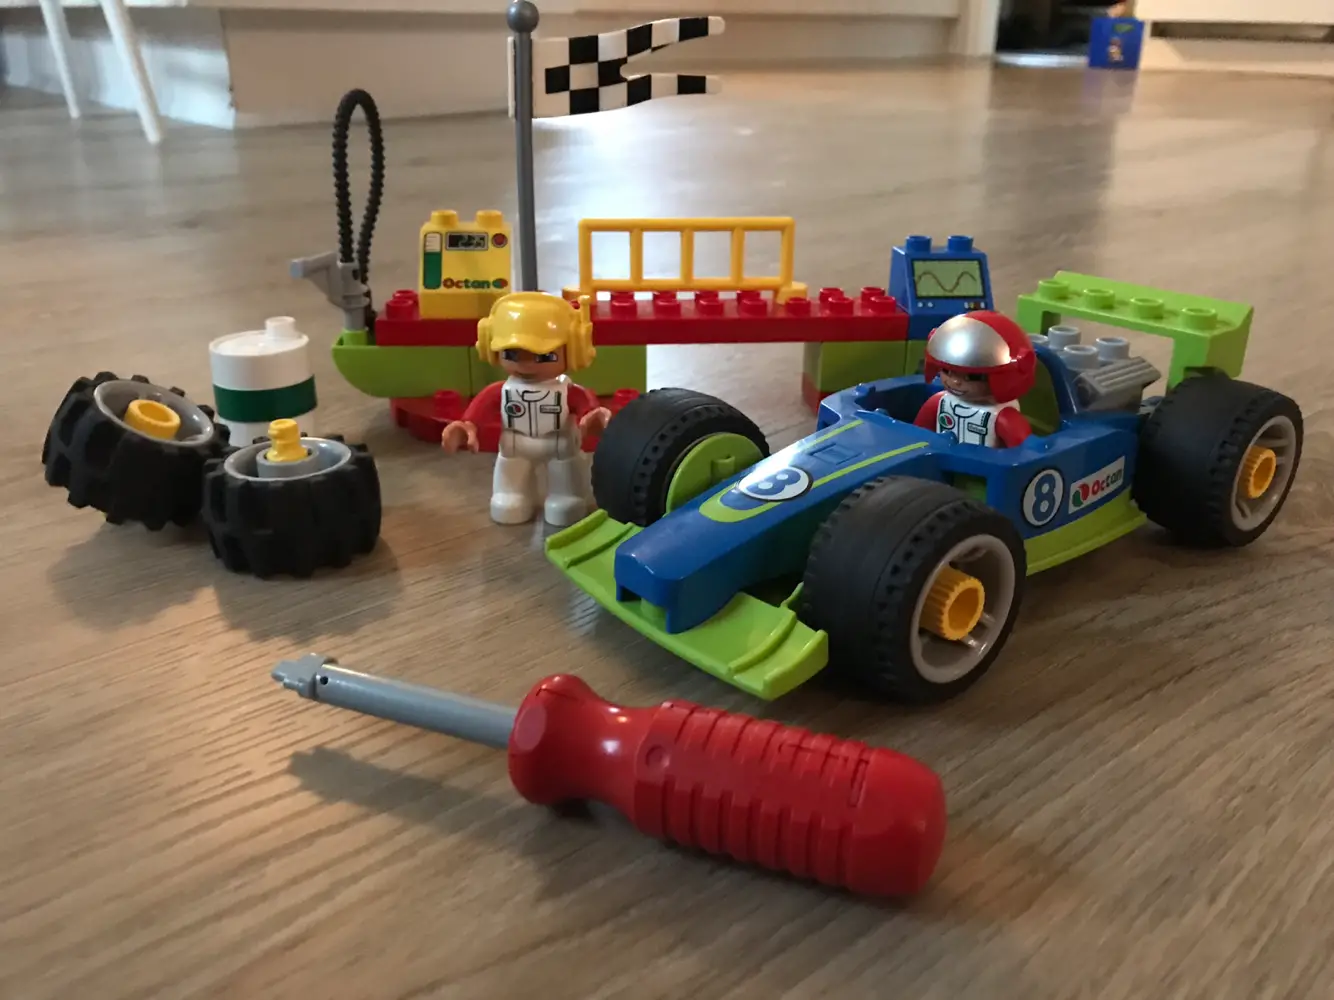 Køb Lego duplo Racing team racerbil af Katrine Høyer på Reshopper · secondhand til børn, mor og bolig